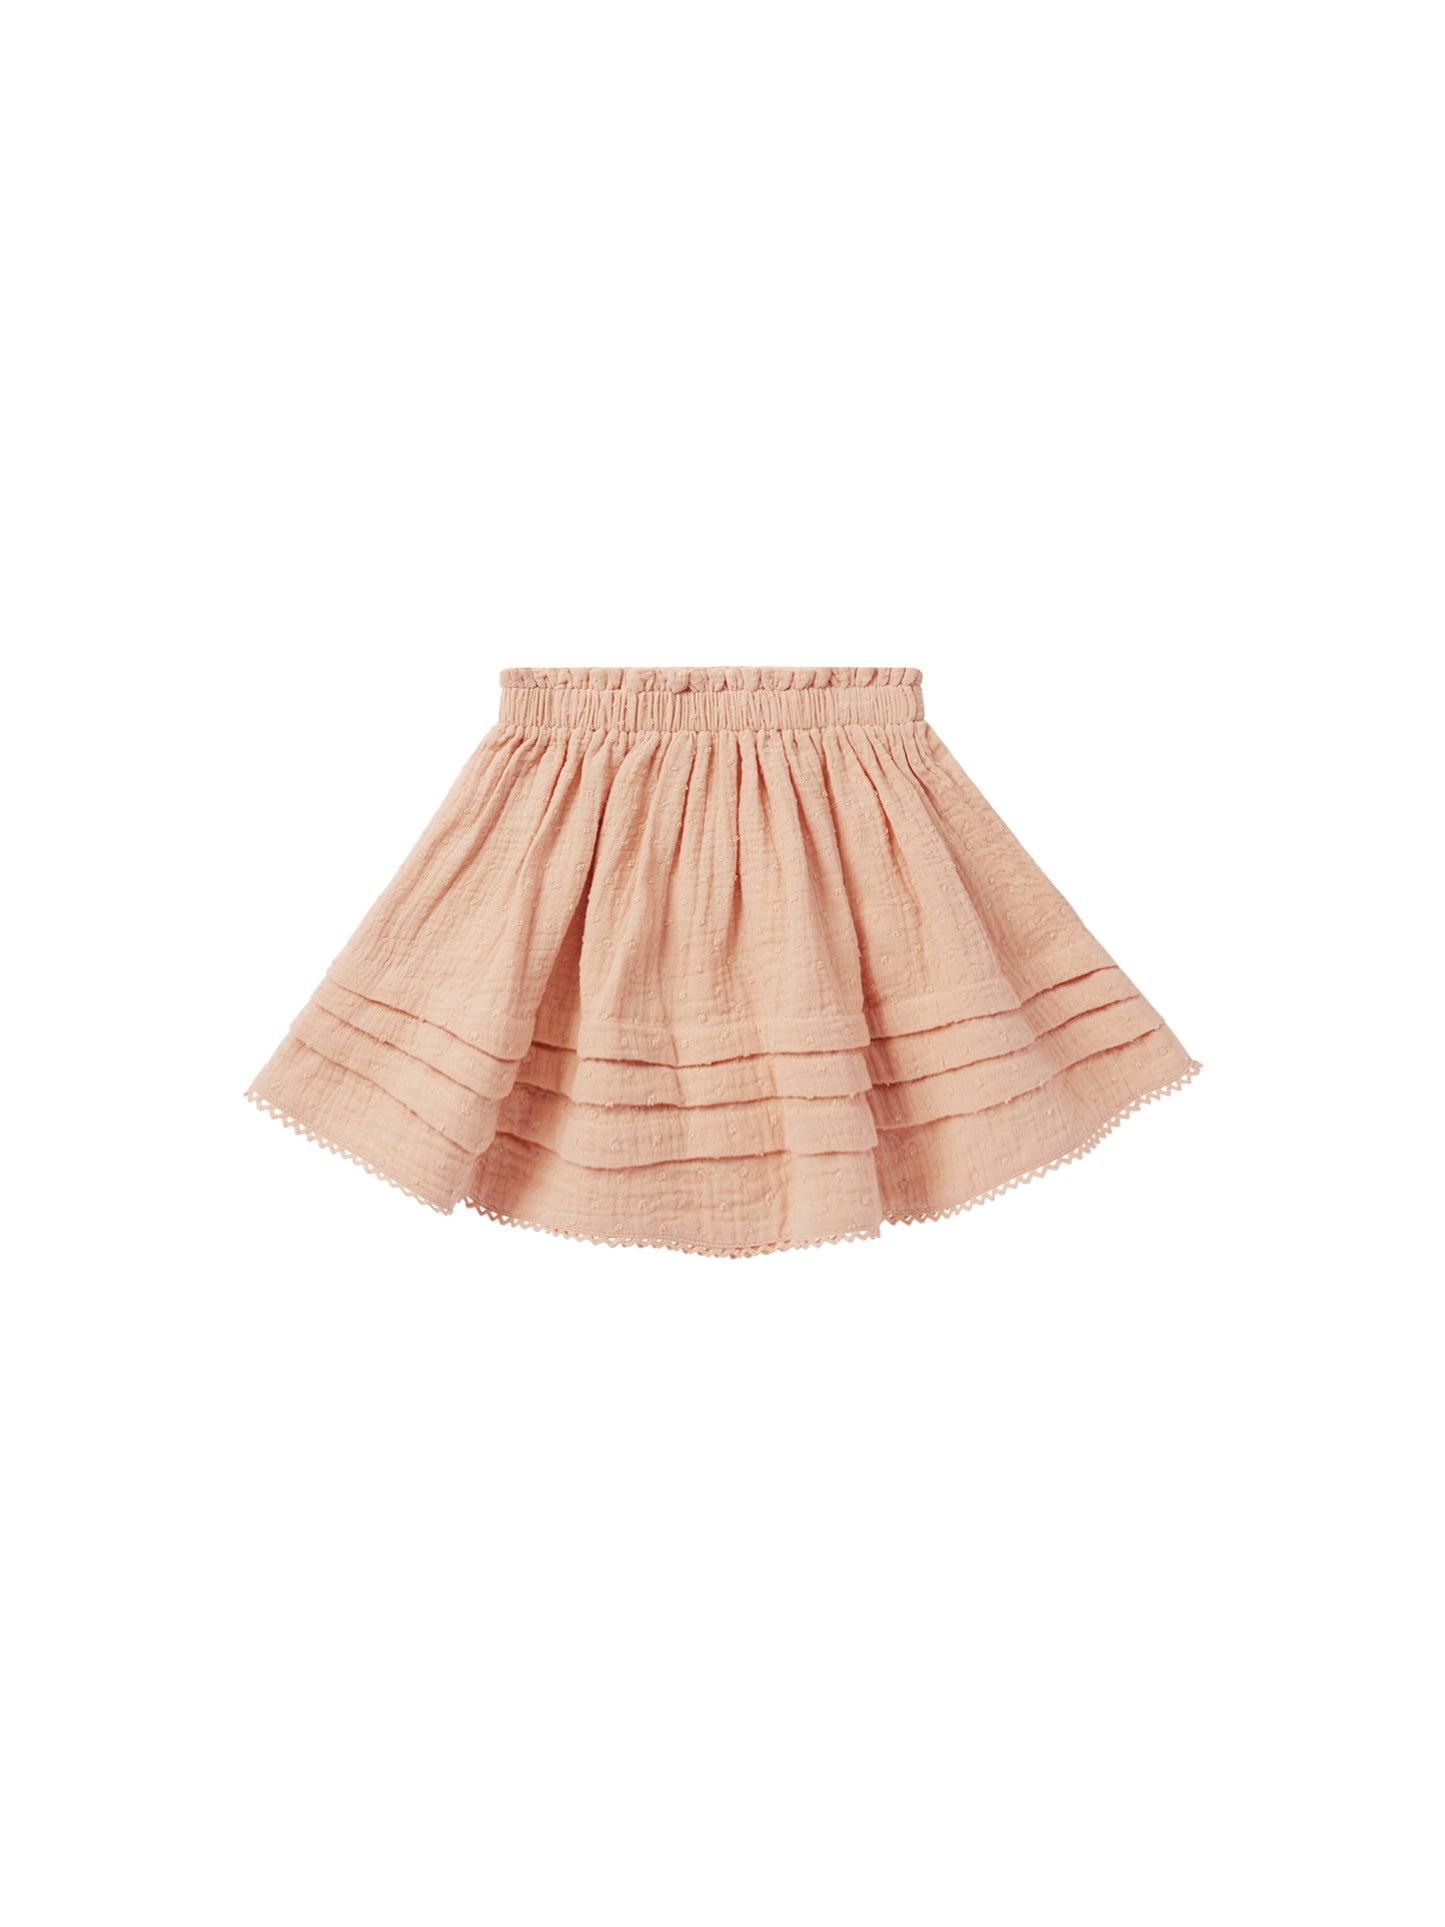 R+C Mae Skirt- Apricot